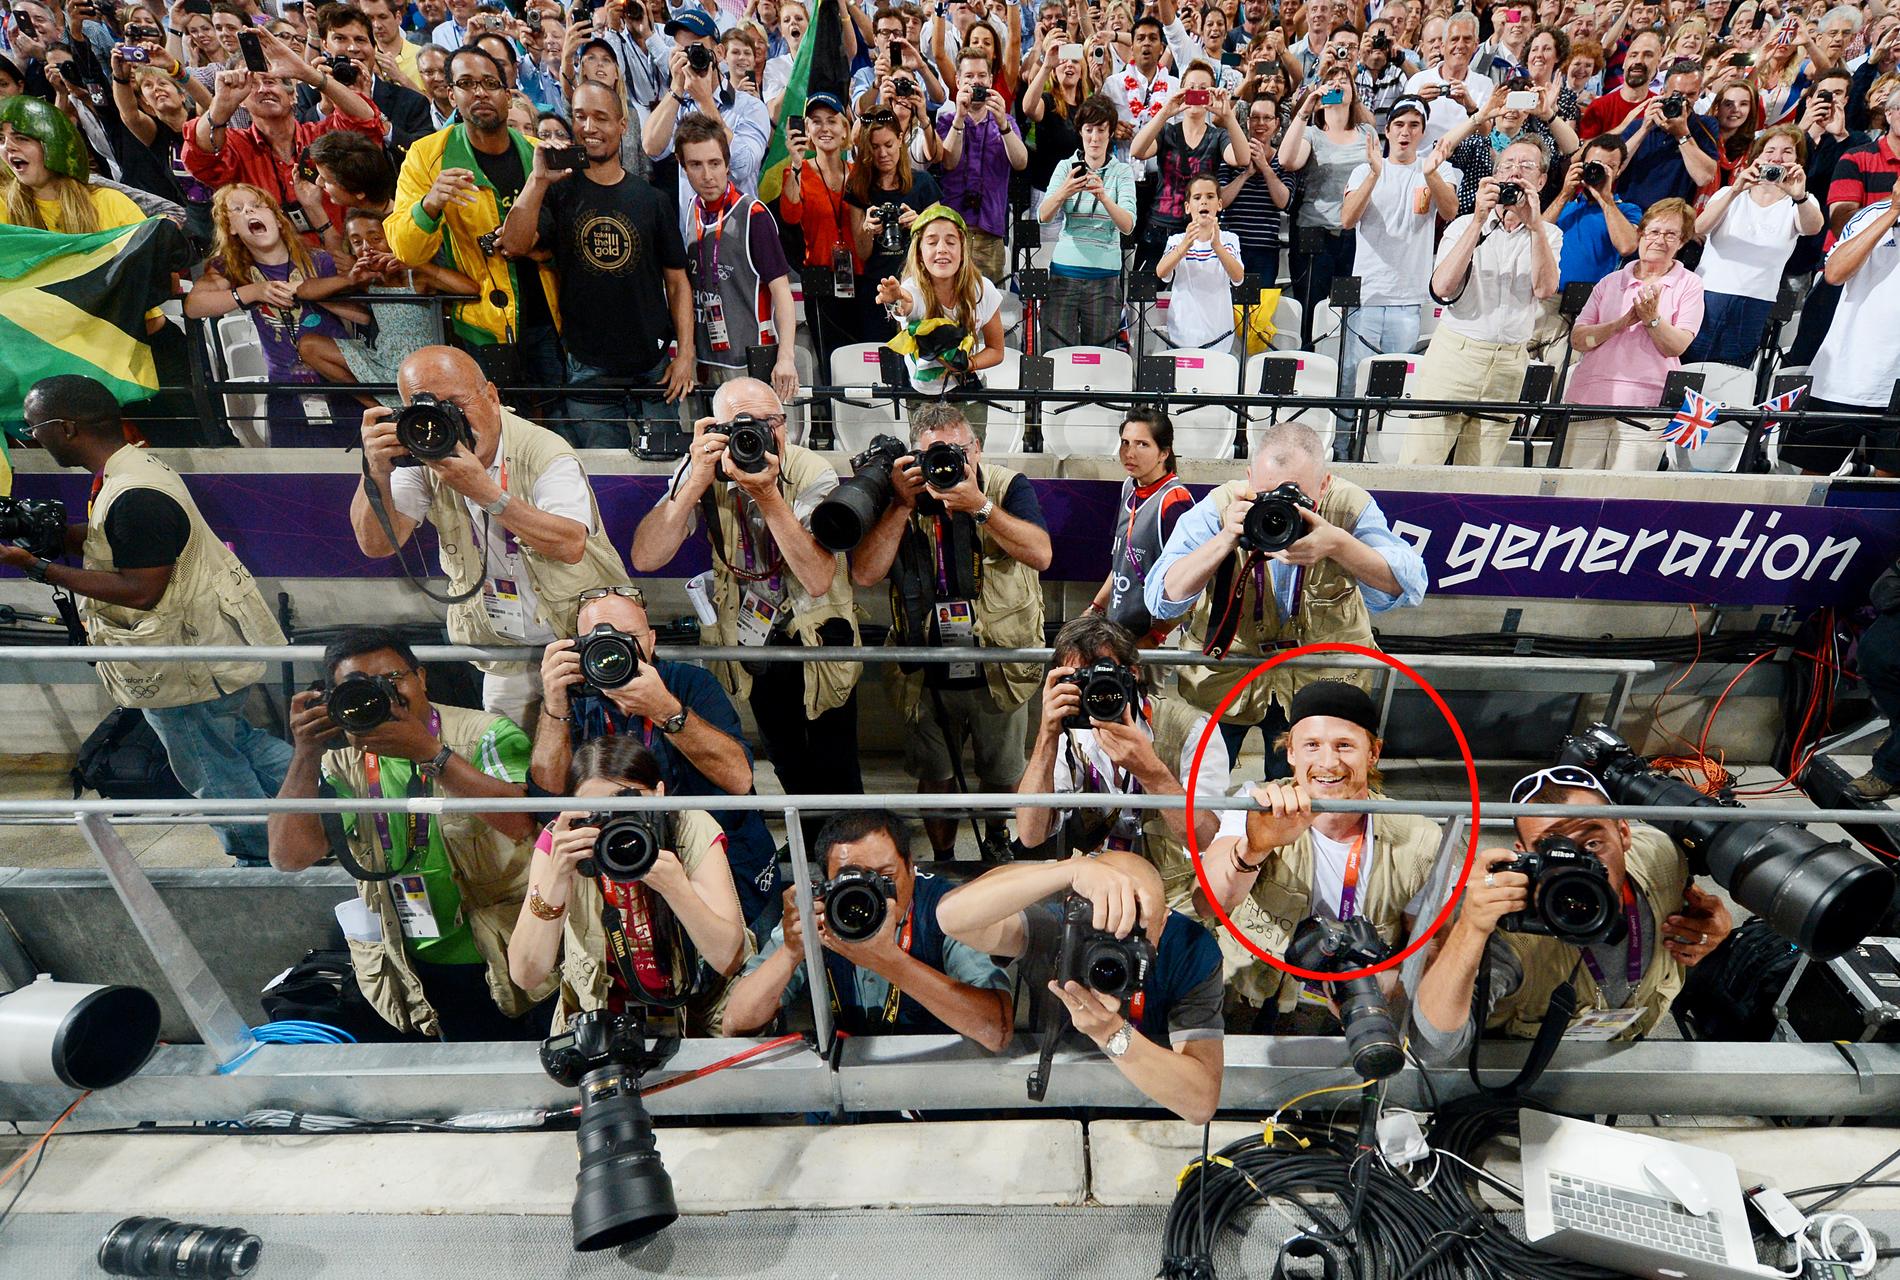 Bolt lånar Sportbladets fotograf Jimmy Wixtröms kamera och förevigar segerfesten och Jamaicas storslam i 200 meters finalen. Här fotar han även Sportbladets Jimmy Wixtröm.